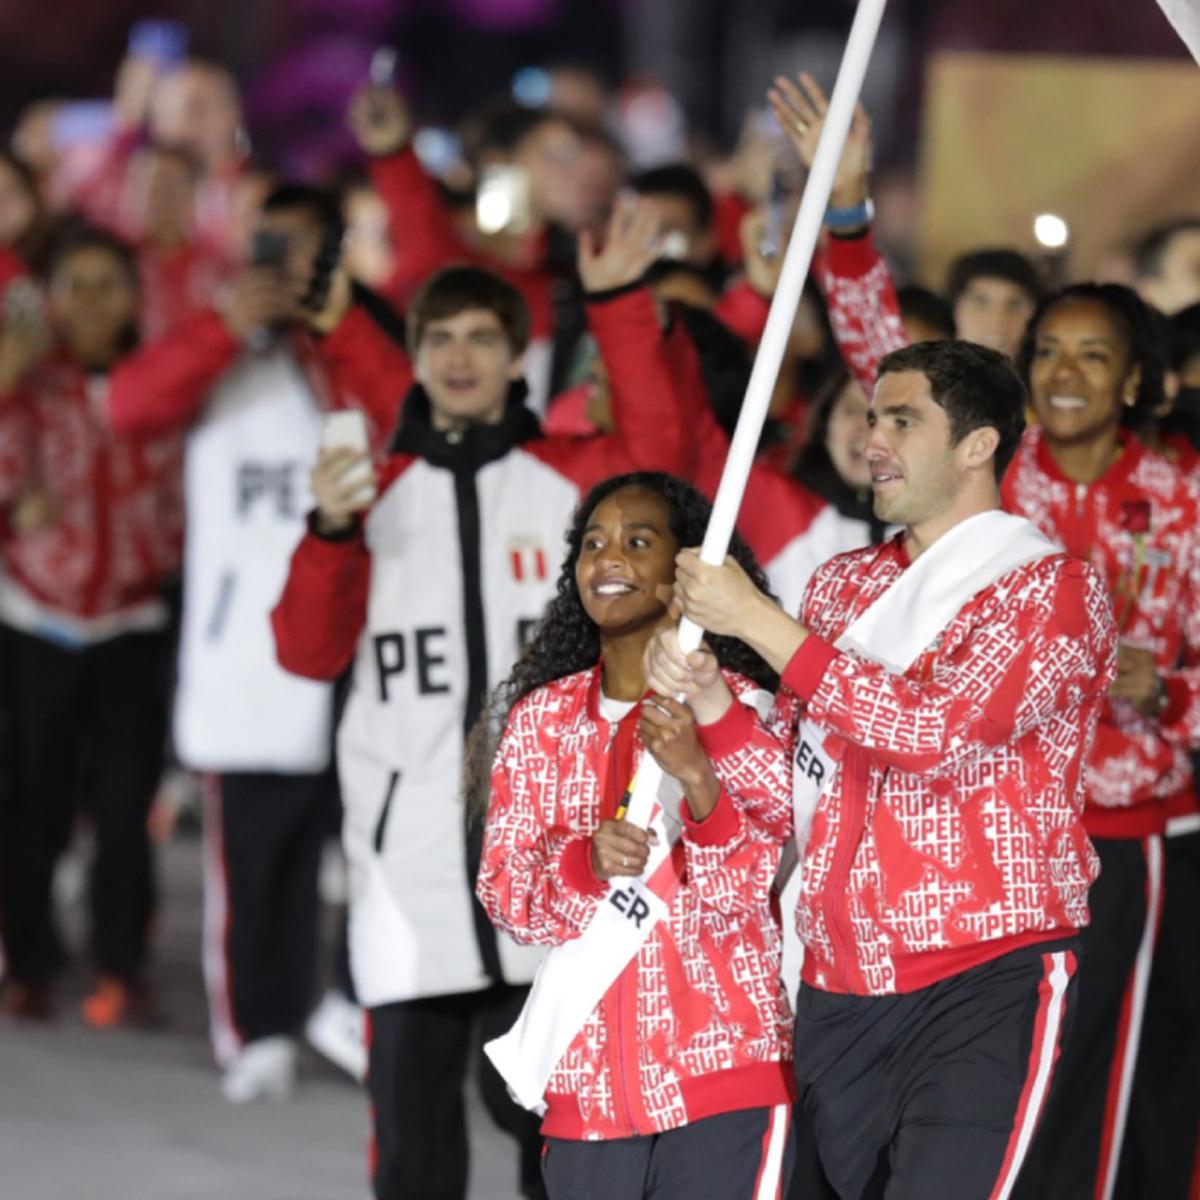 Perú en Juegos Panamericanos Santiago 2023 EN VIVO: calendario de la  delegación peruana y canales de transmisión XIX juegos Panamericanos, Deportes